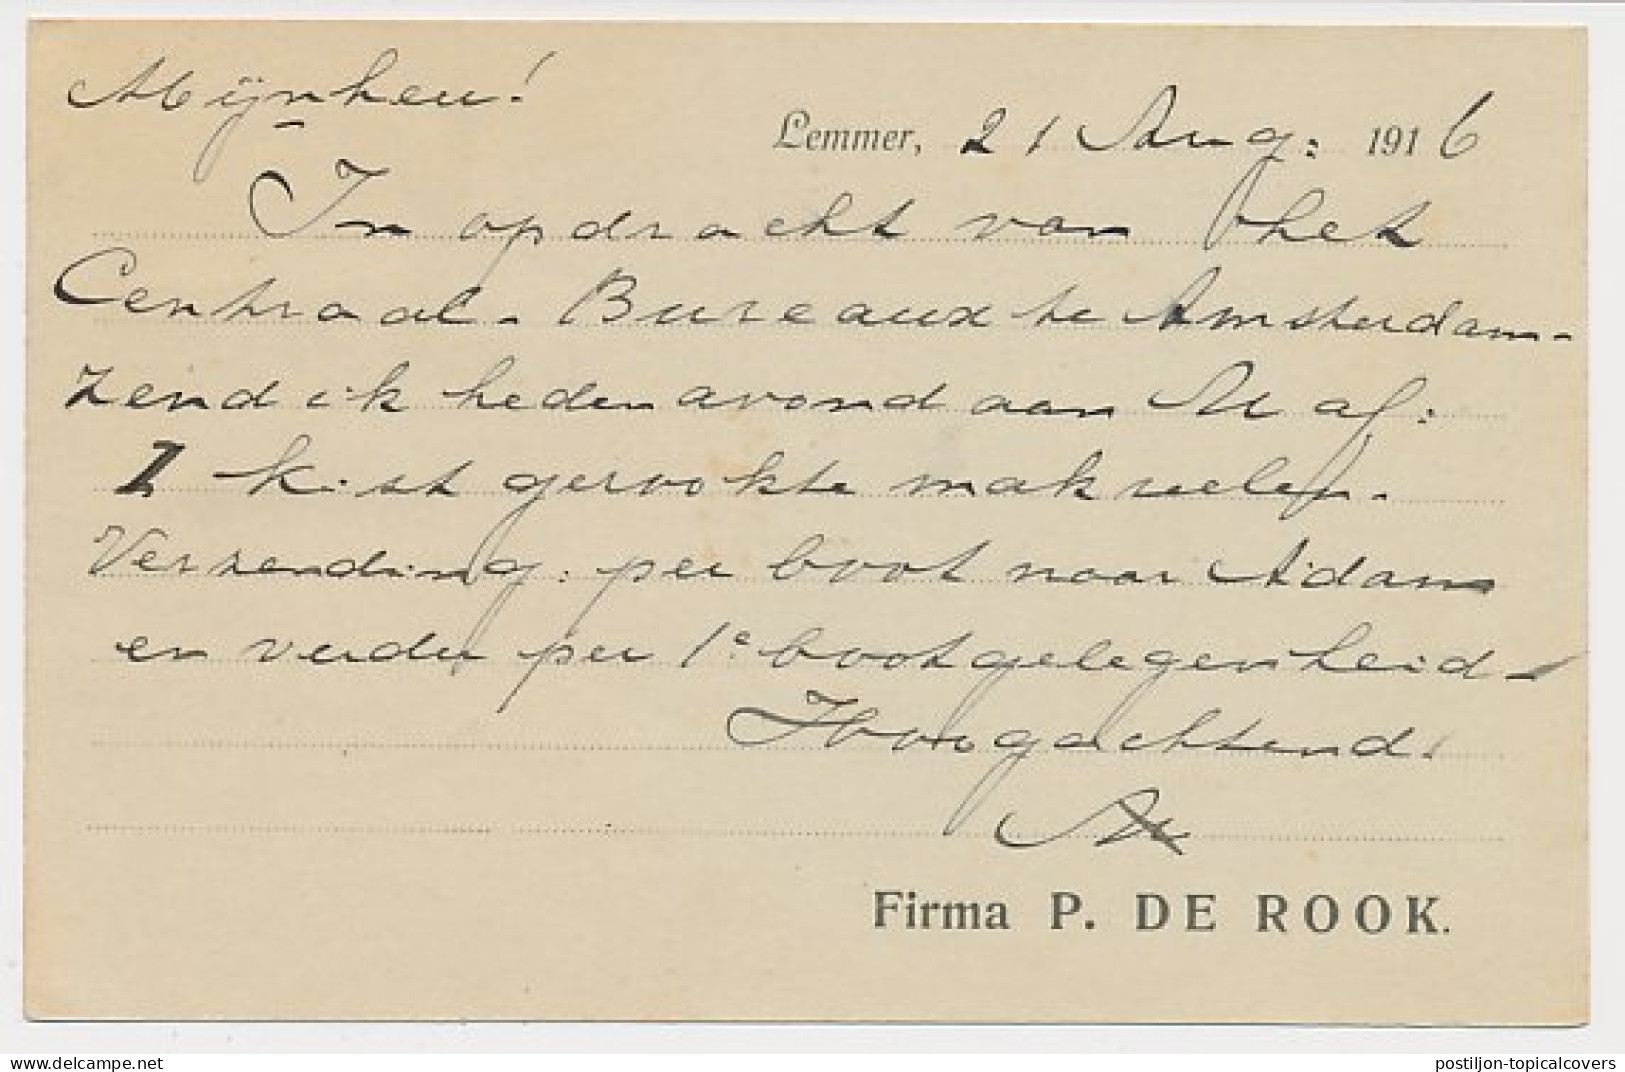 Firma Briefkaart Lemmer 1916 - Vishandel - Non Classés